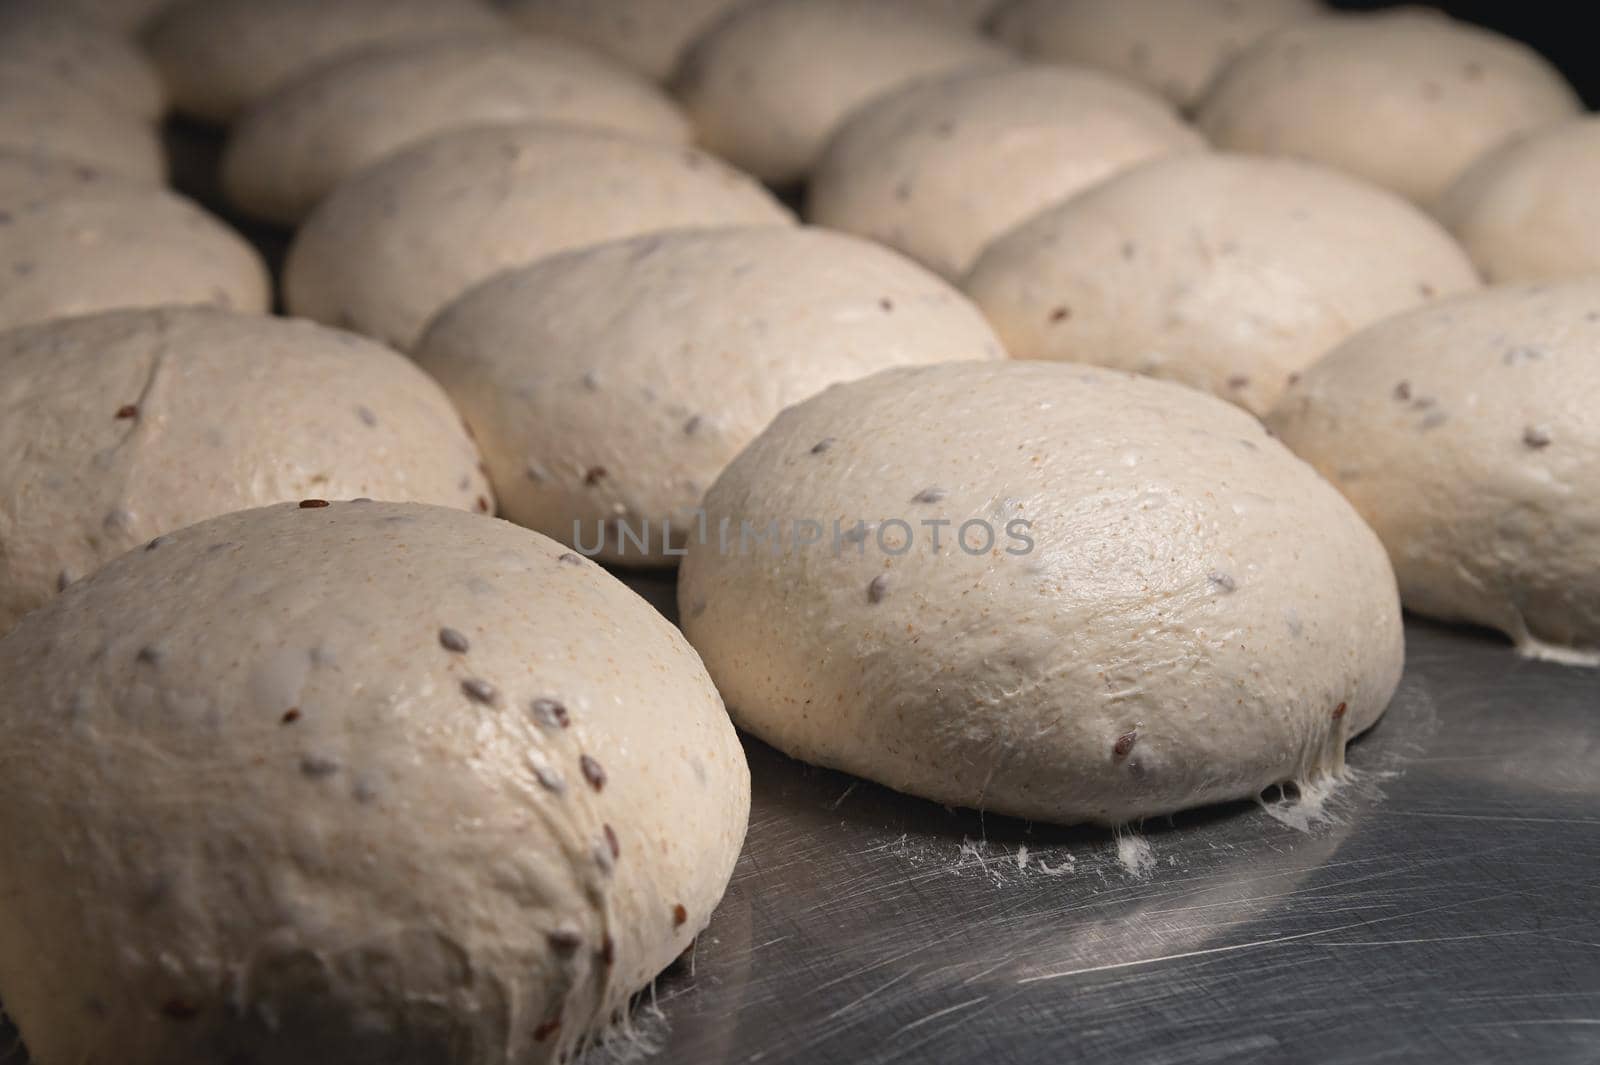 Raw burger buns dough on a metal baking sheet. Preparing ingredients for burgers by yanik88